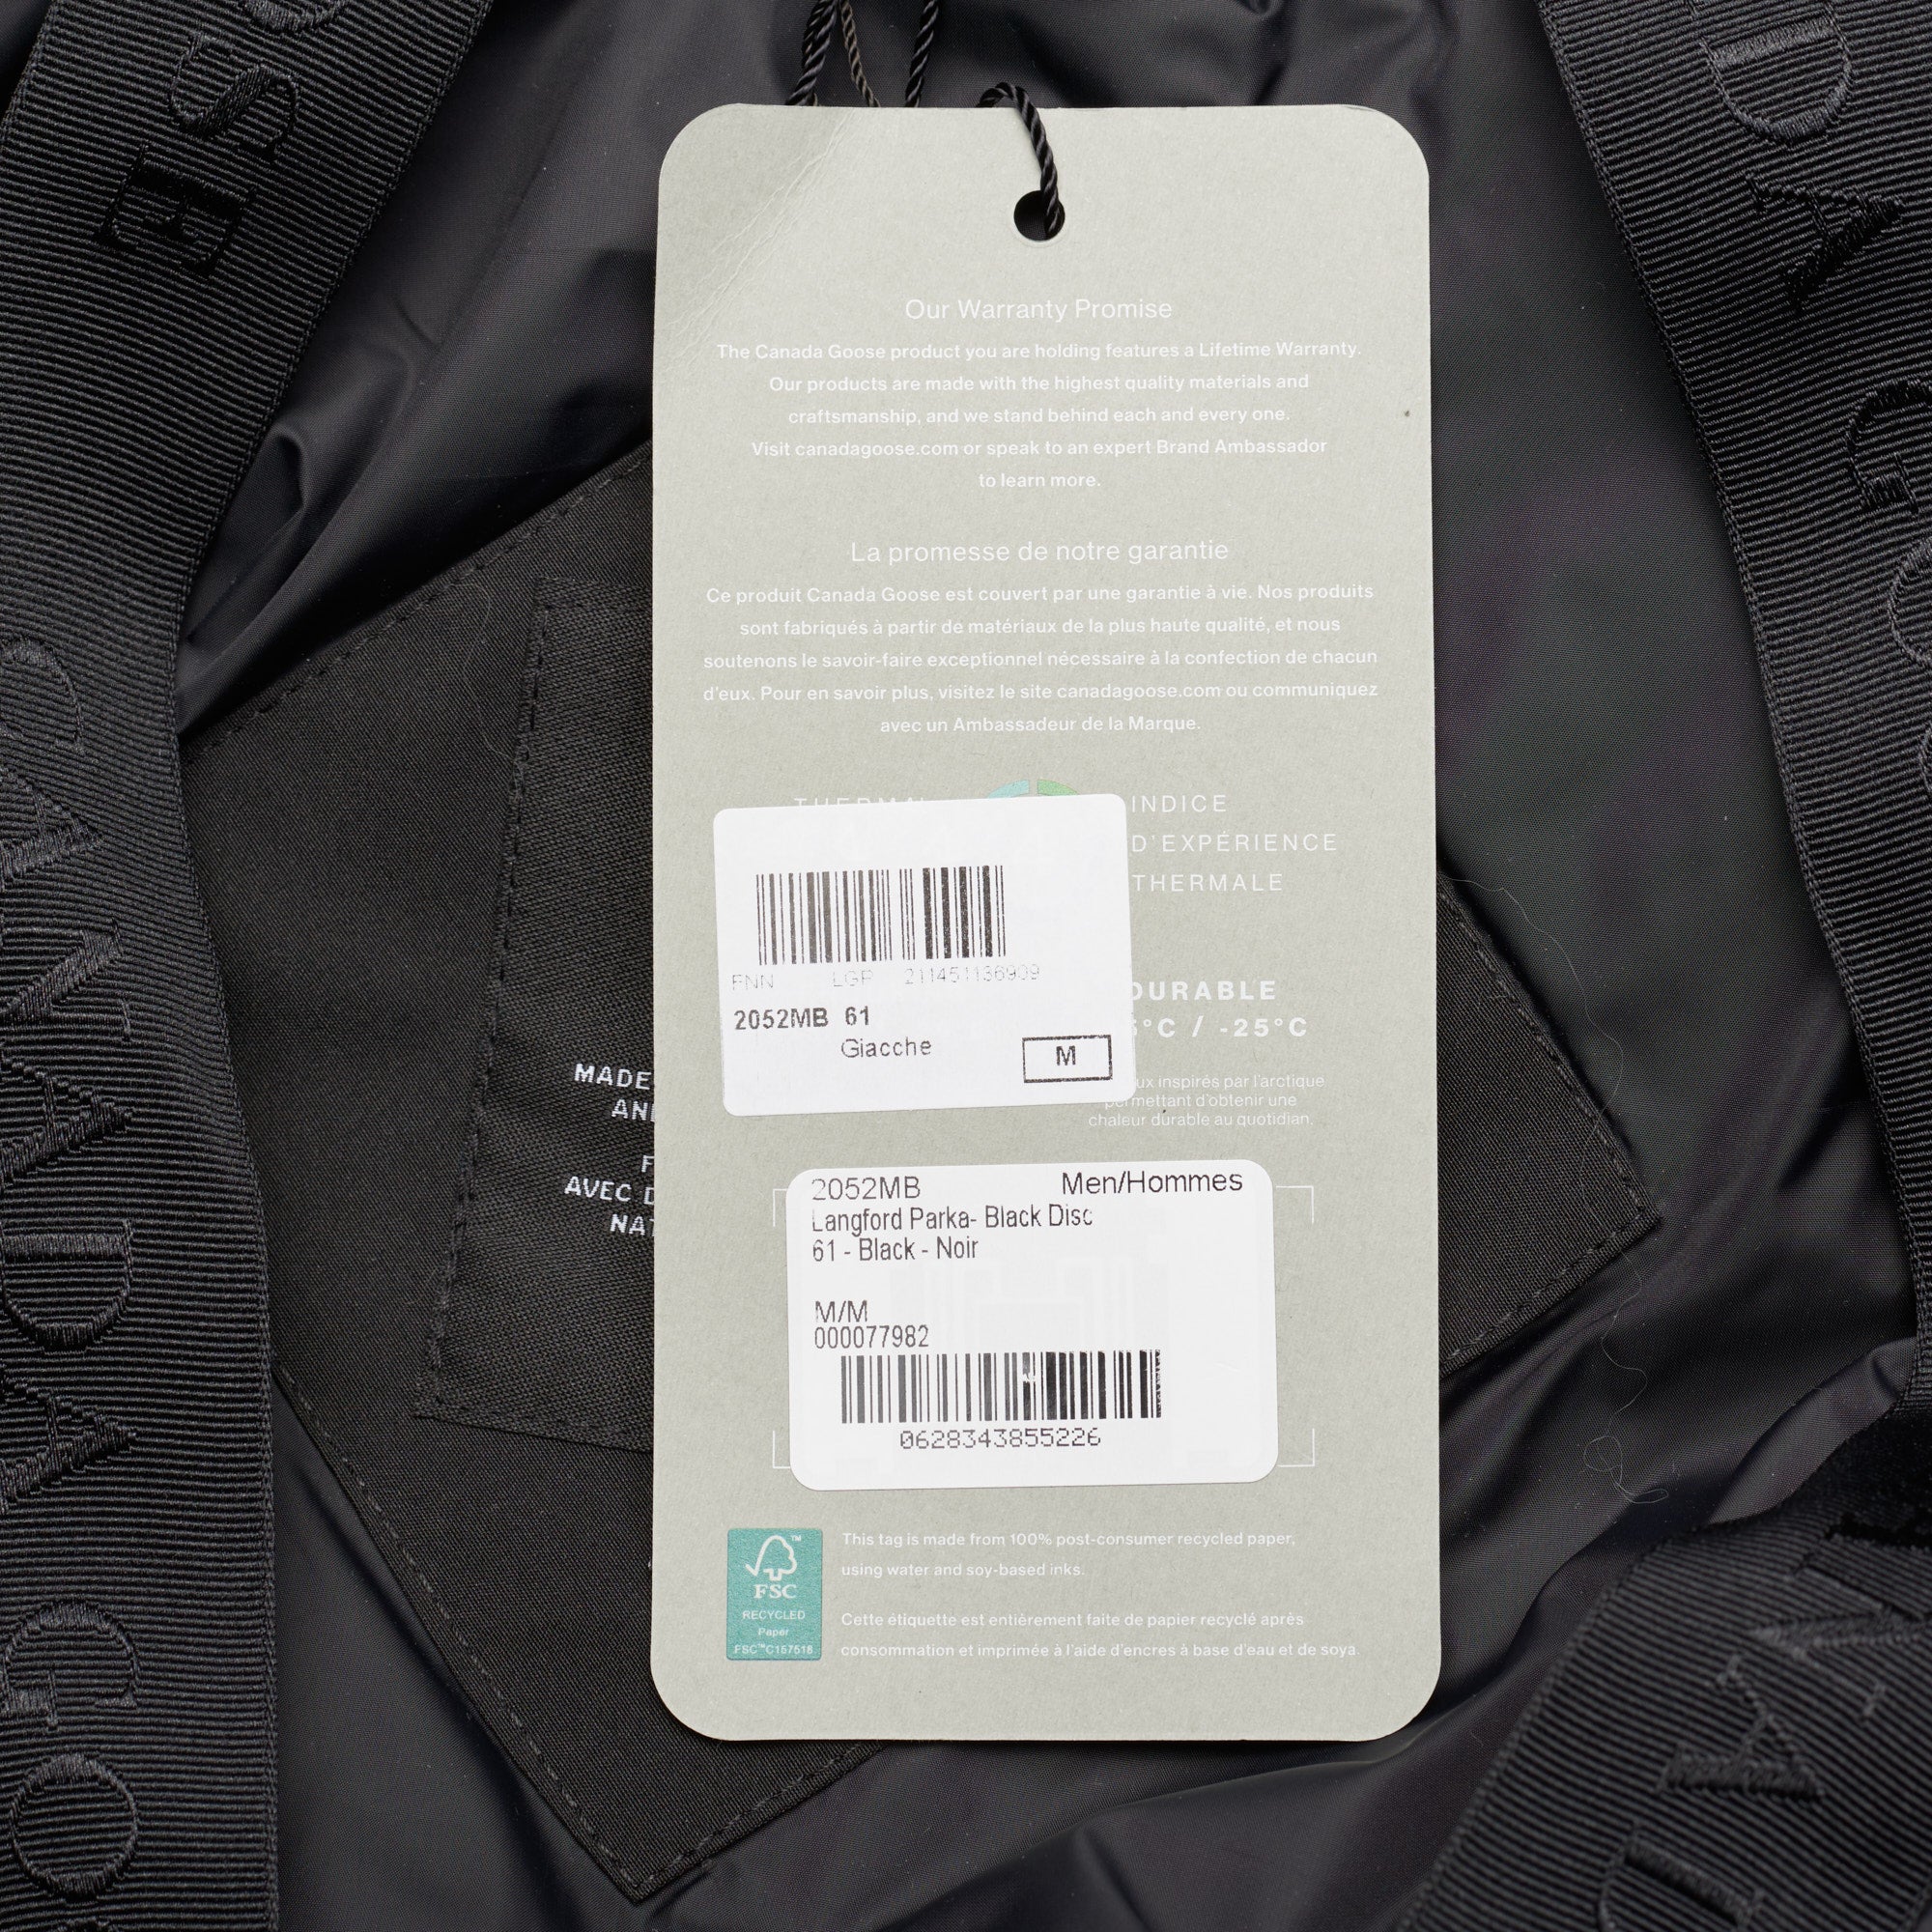 CANADA GOOSE  Langford Parka  Black Label 2052MB 61 Black Down Jacket Coat